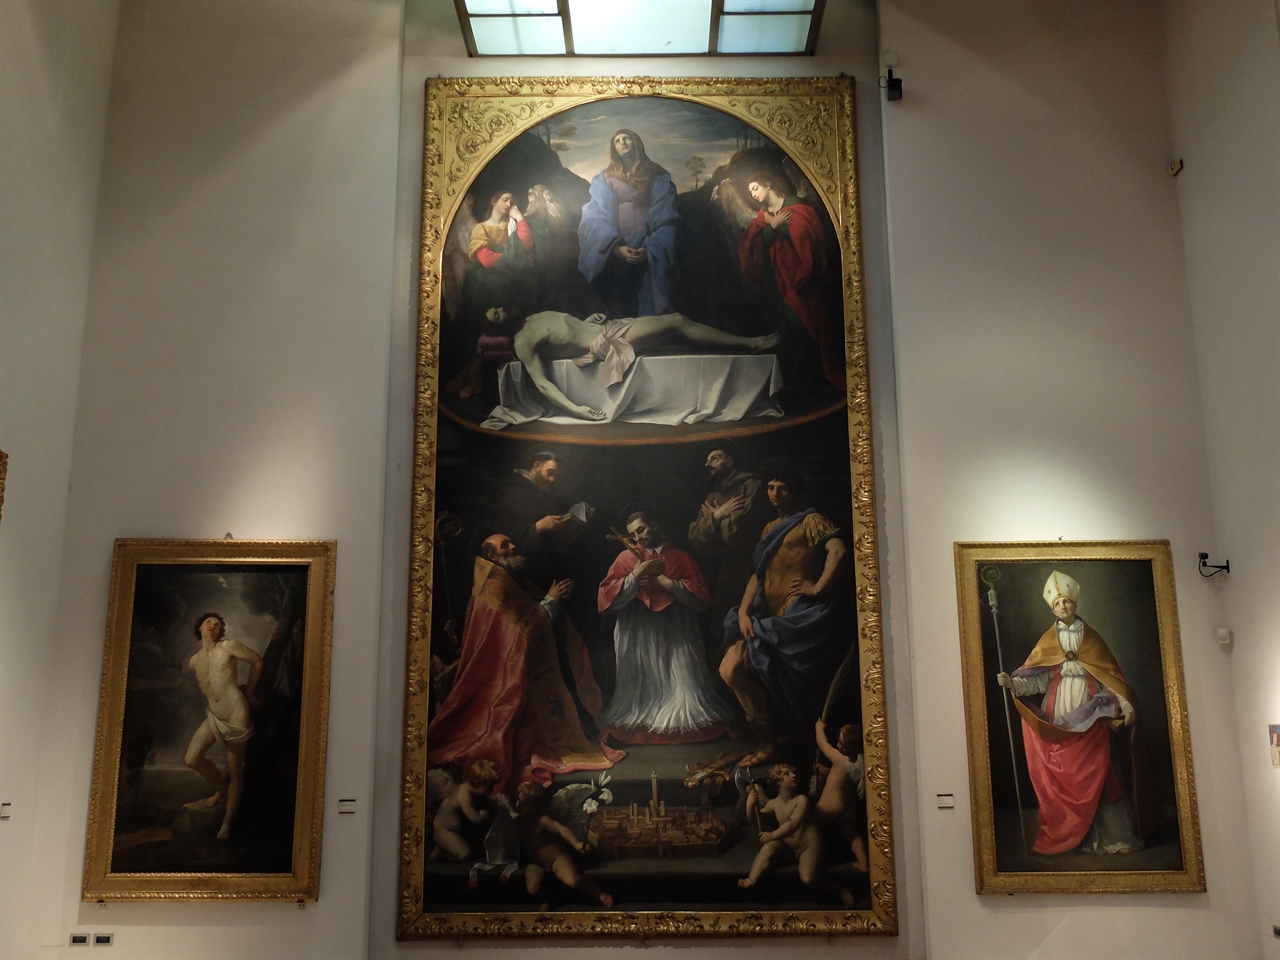 구이도 레니, ‘피에타 데이 멘디칸티’ (중앙), '성 세바스티아노'(왼쪽), '성 안드레아 코르시니'(오른쪽), 볼로냐 국립 회화관. 리드미컬한 색채감과 부드러운 정조가 특징인 구이도 레니의 명작들이 개인전처럼 전시되어 있습니다.